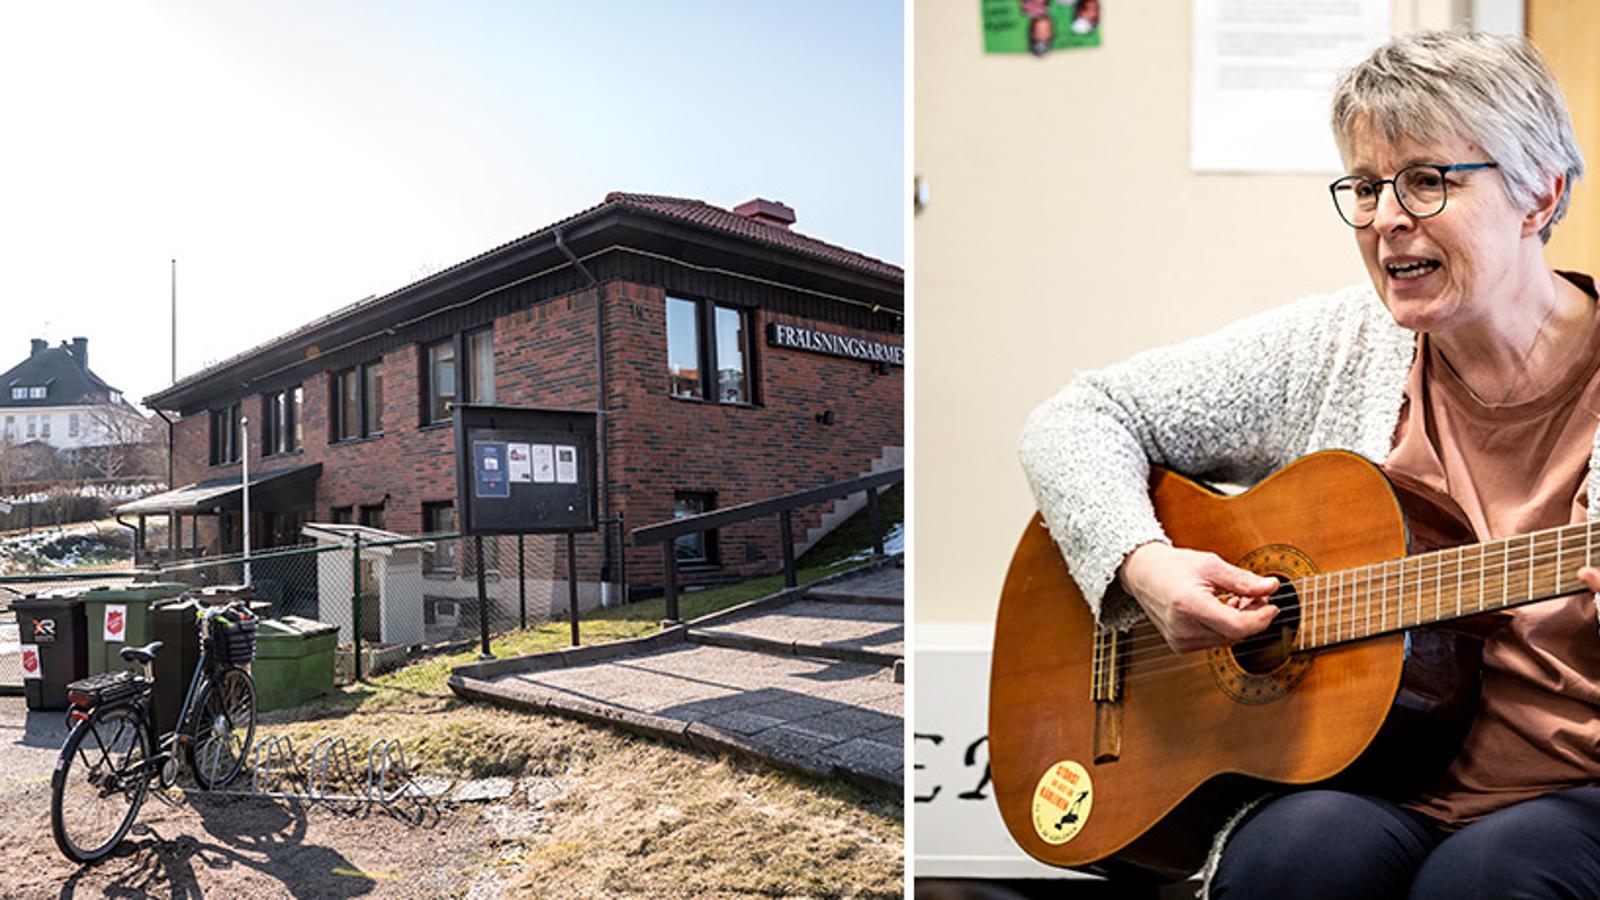 Till vänster: Förskolan Solstrålens fasad. Till höger: Förskolechefen Brittmarie Andersson som sitter och spelar gitarr.